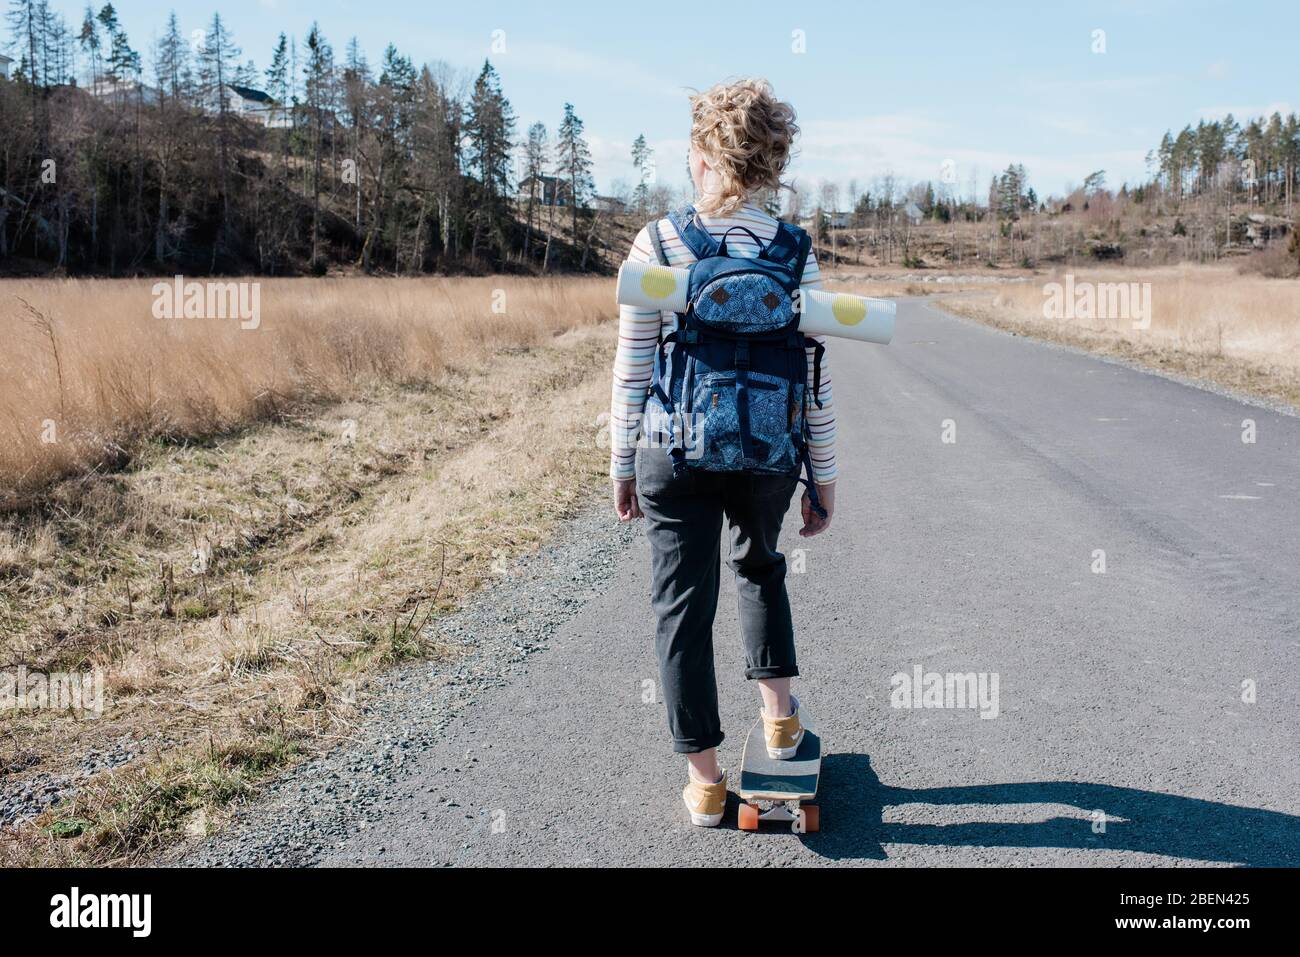 Frau, die beim Skateboard-Skaten eine Yogamatte in einem Rucksack trägt Stockfoto